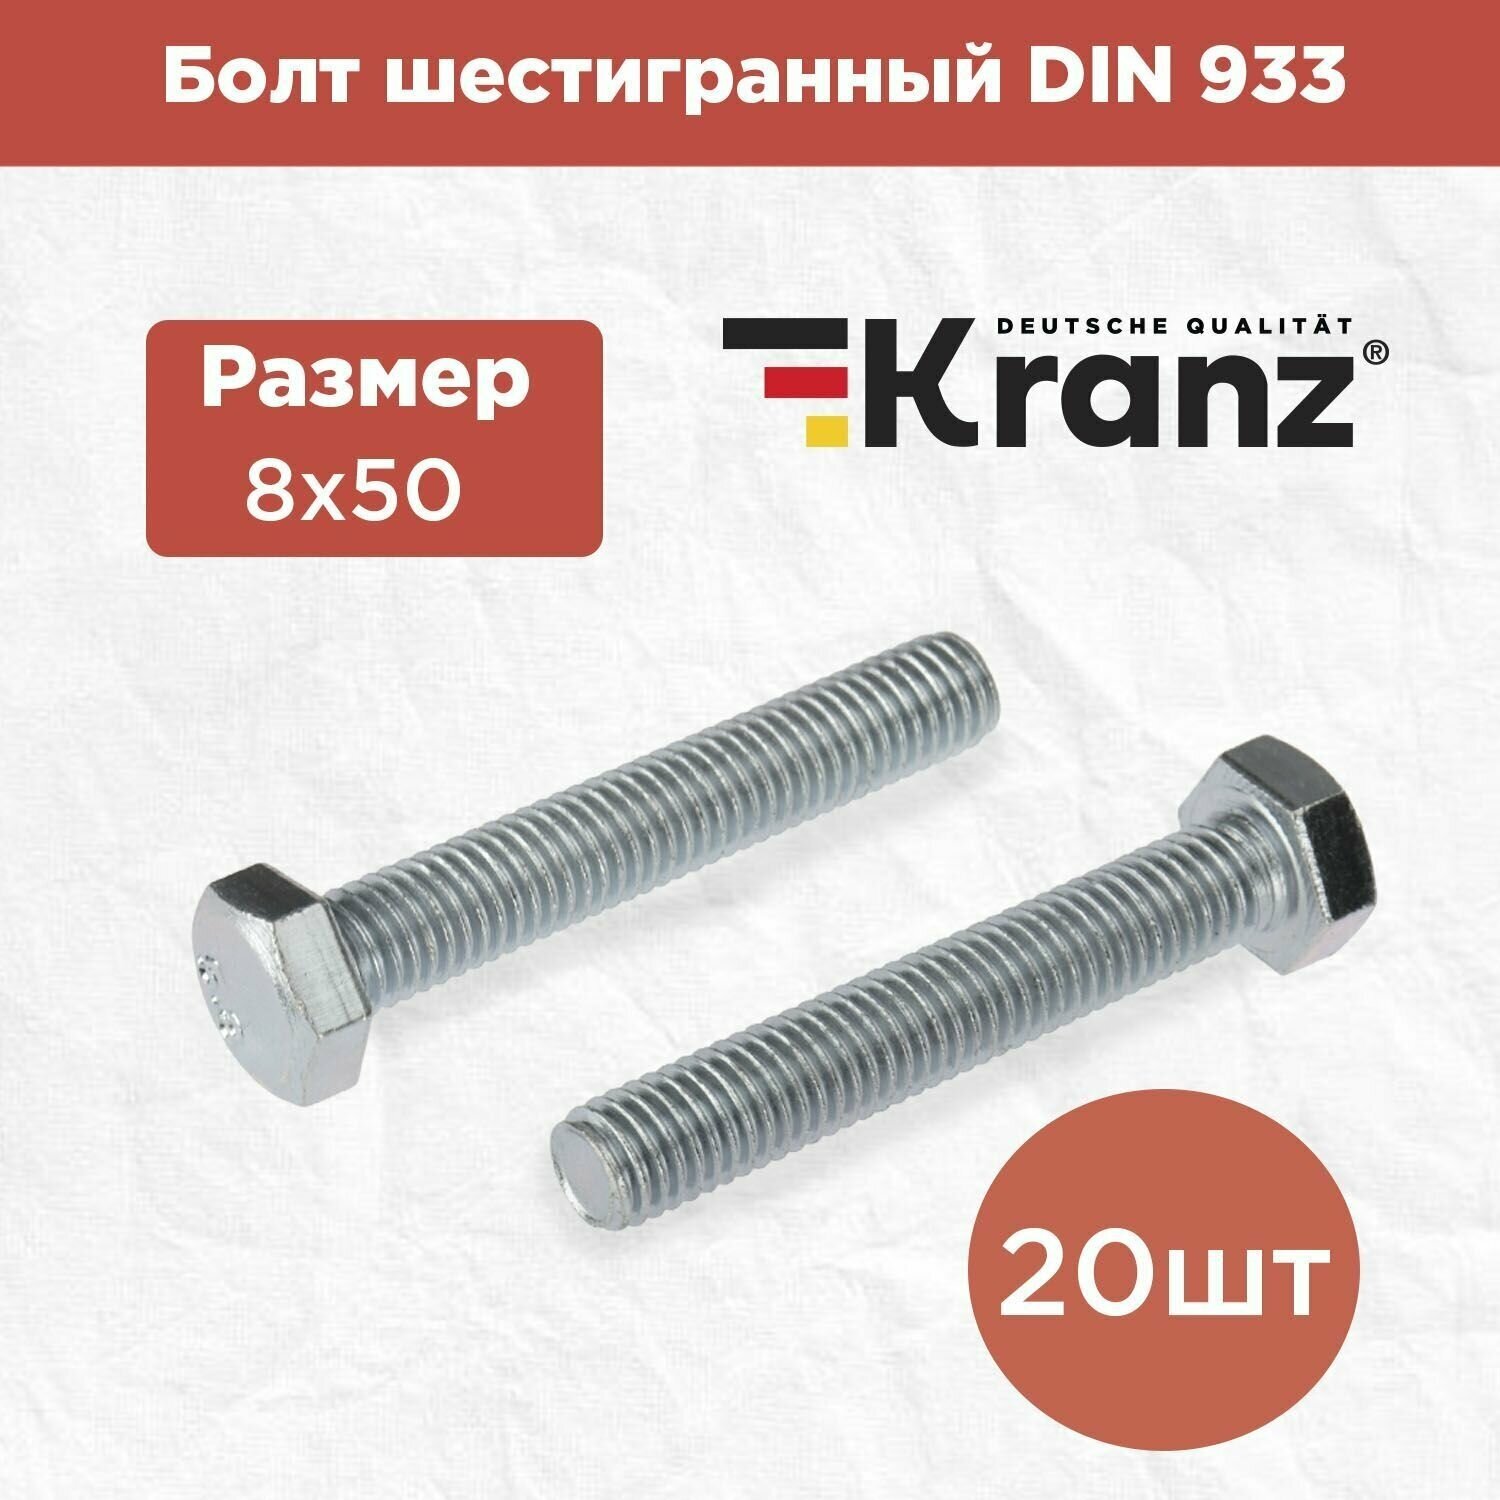 Болт шестигранный KRANZ стандарт DIN 933, 8х50, в упаковке 20 штук